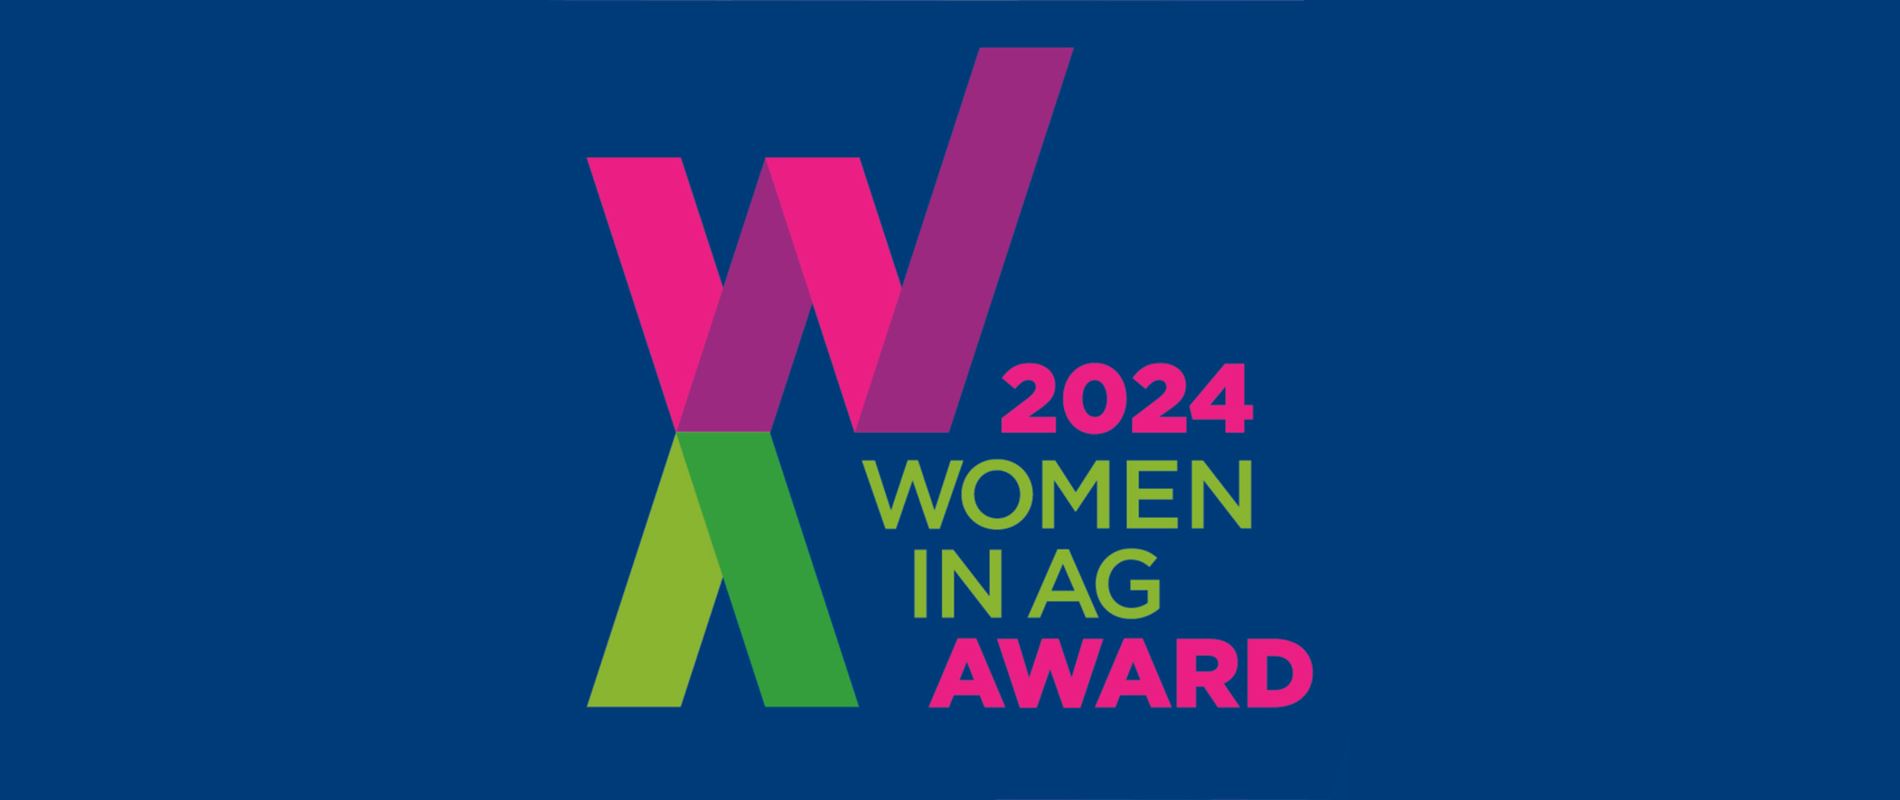 EuroTier 2024 Award Ceremony for Women in Ag Award